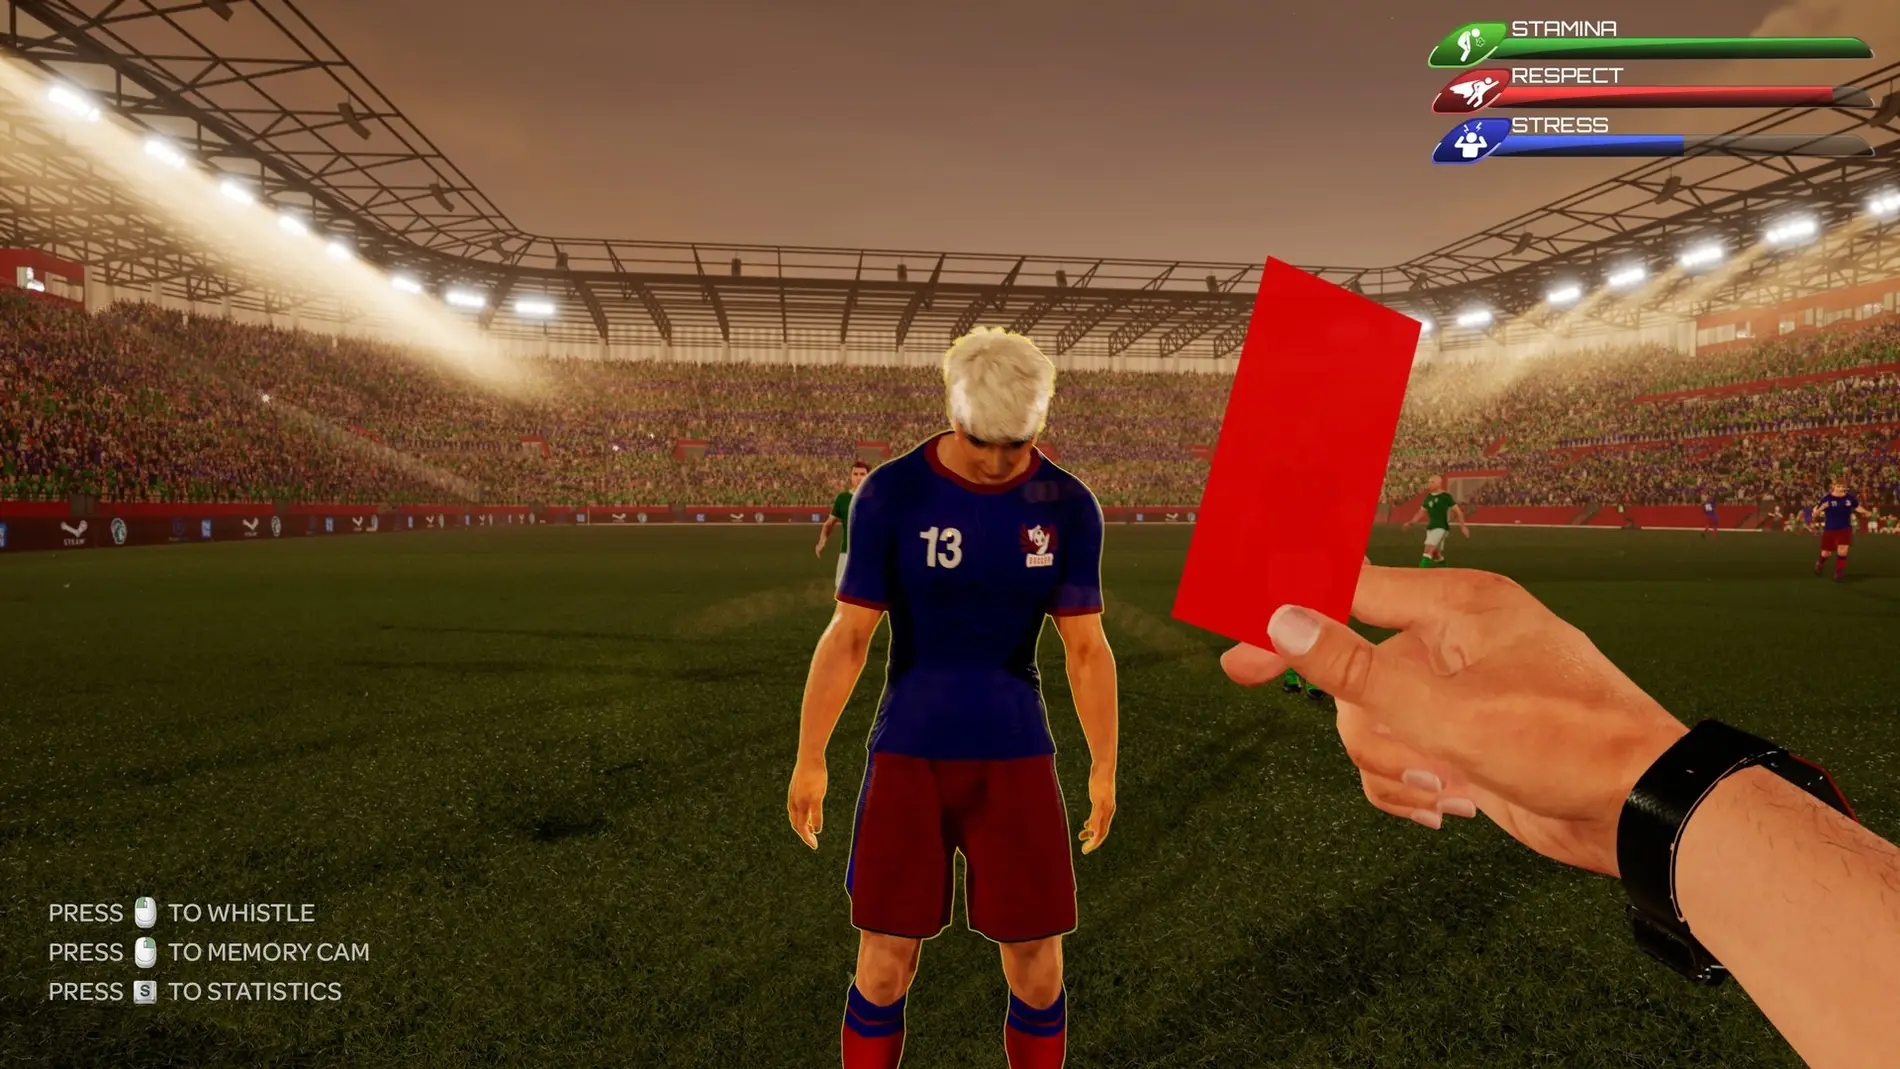 Referee Simulator